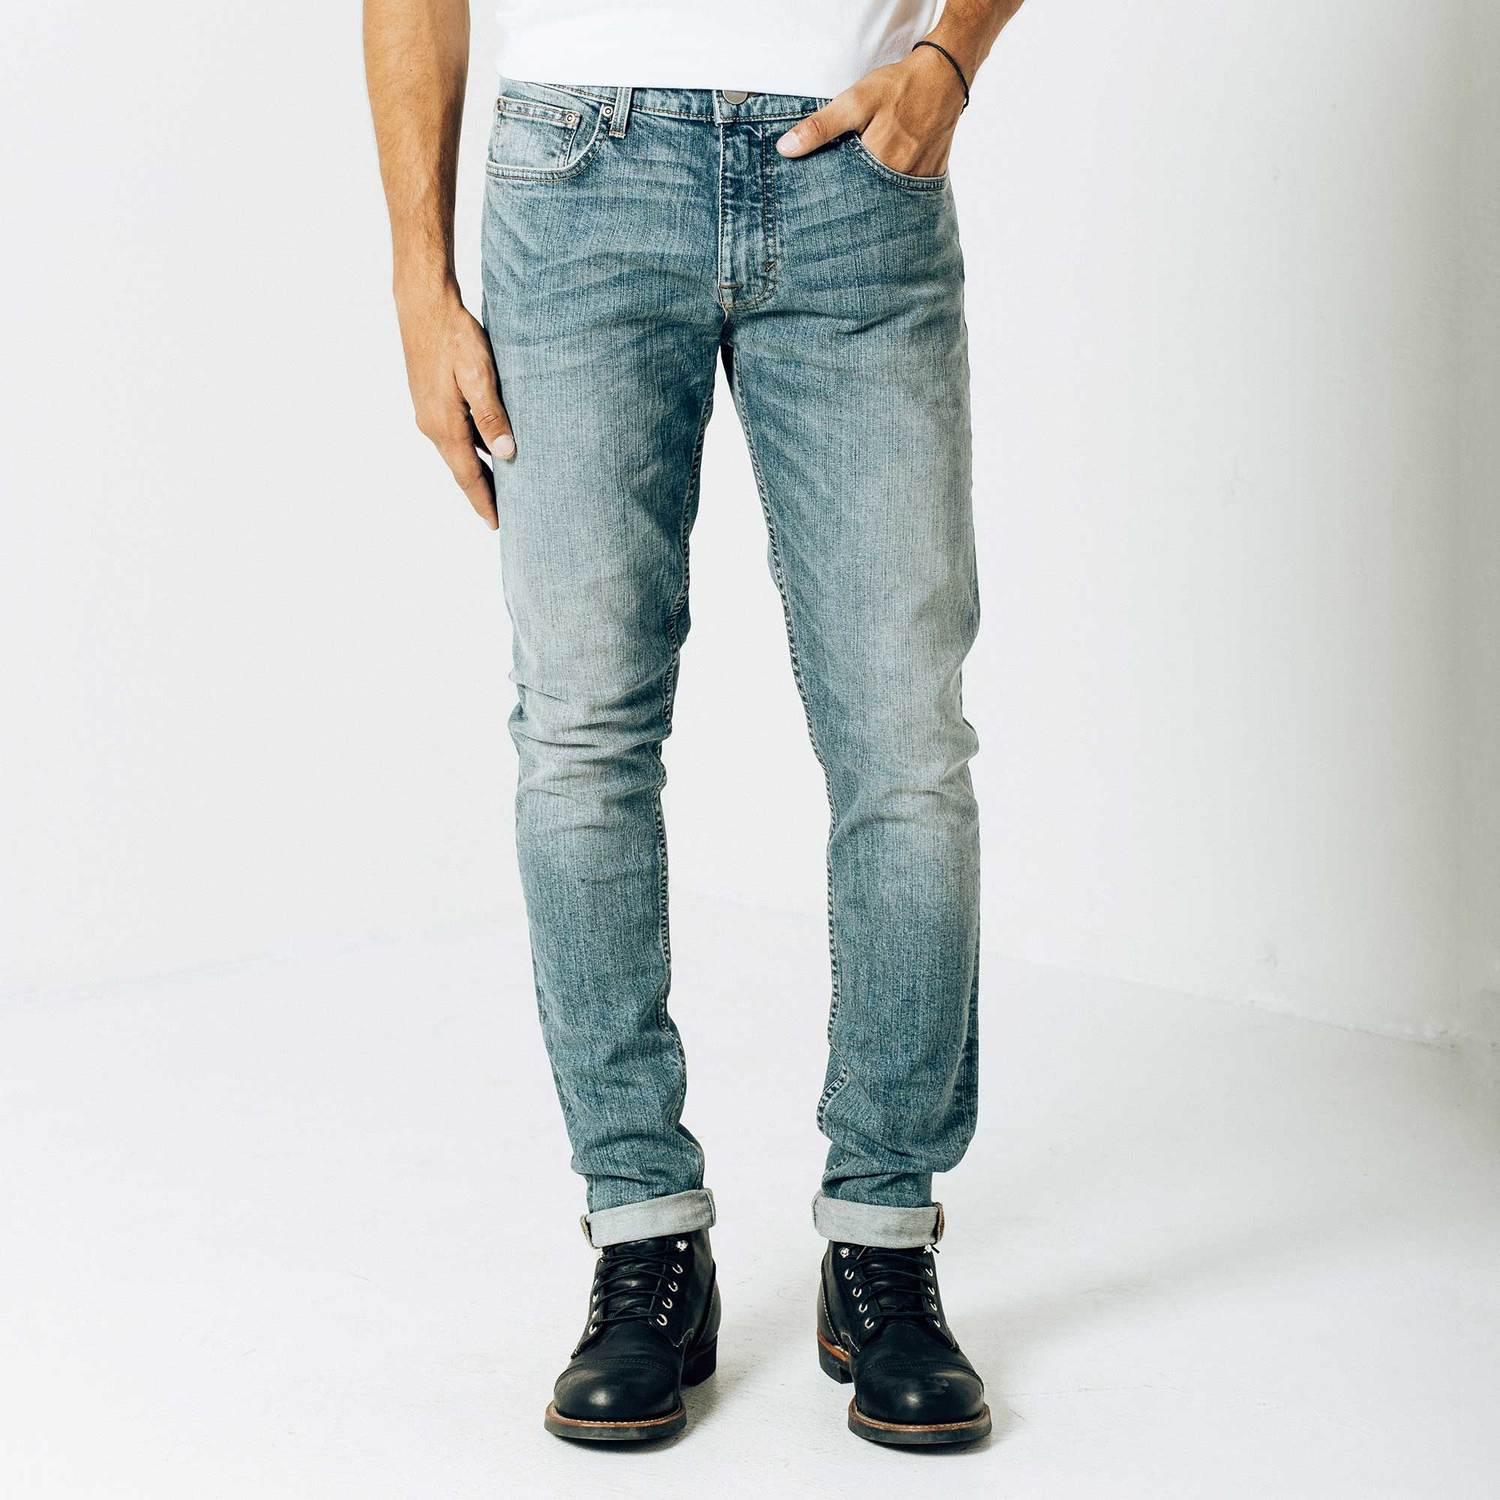 mens skinny jeans skinny-slim jeans in light wash hrbffvc